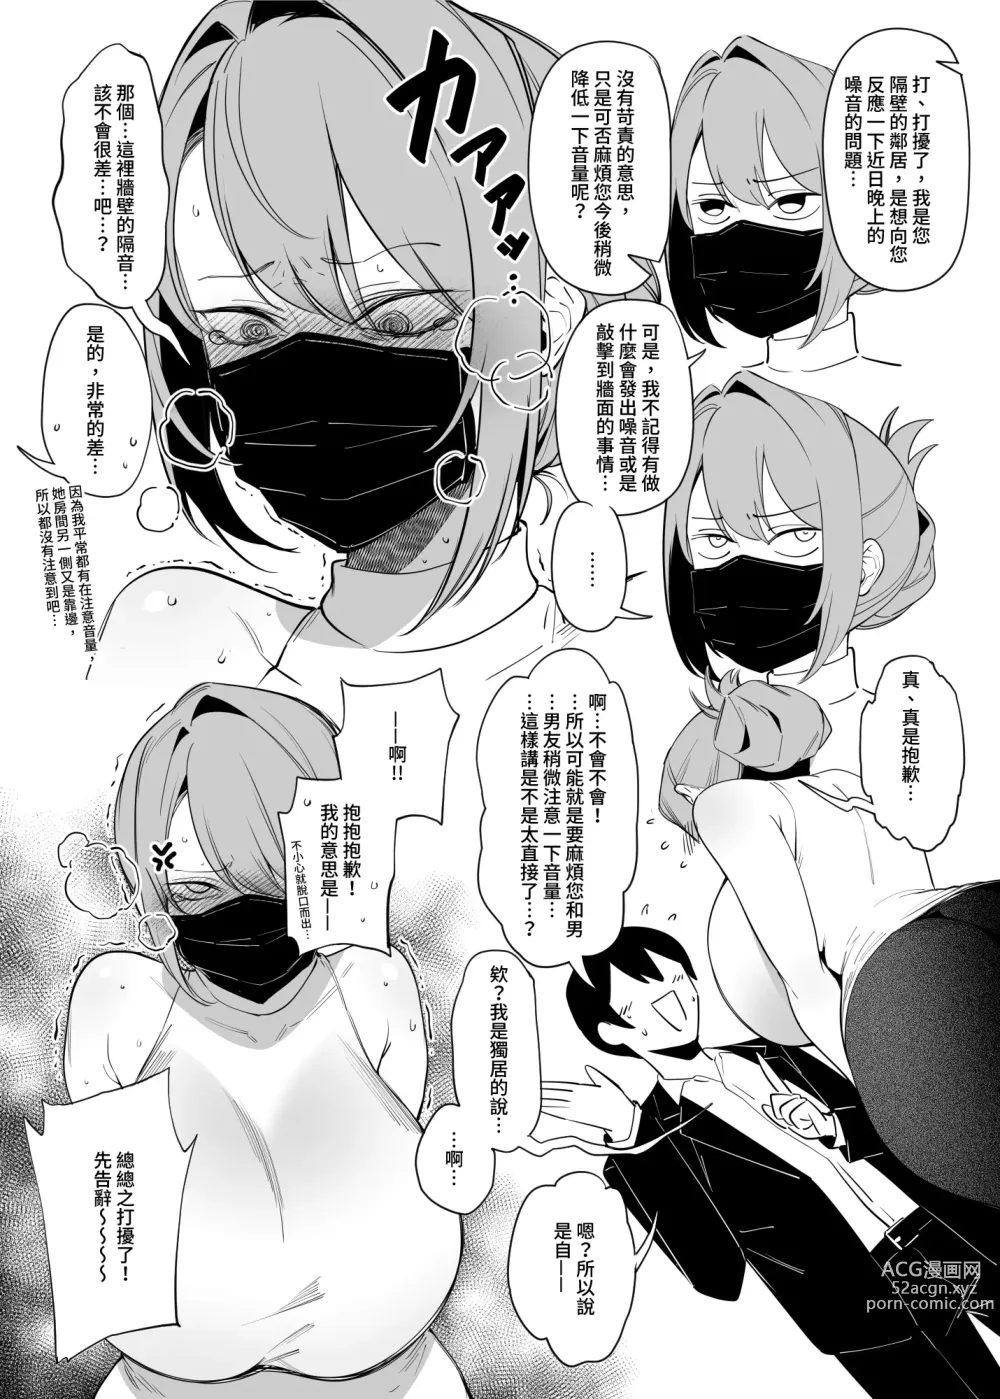 Page 6 of doujinshi comic